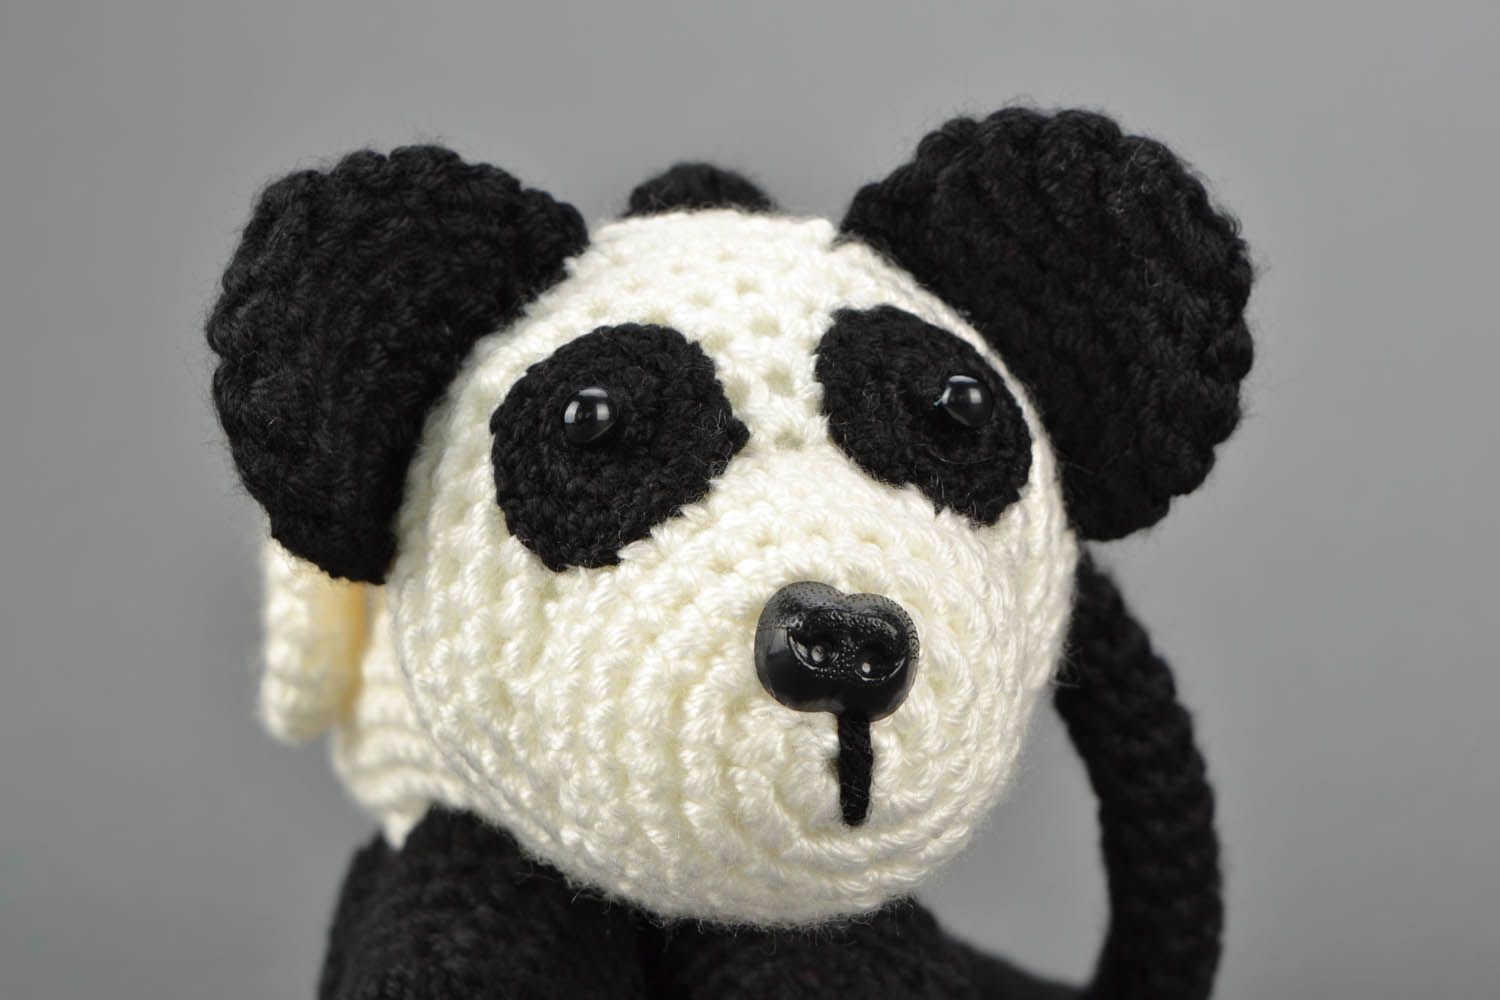 Panda purse photo 5